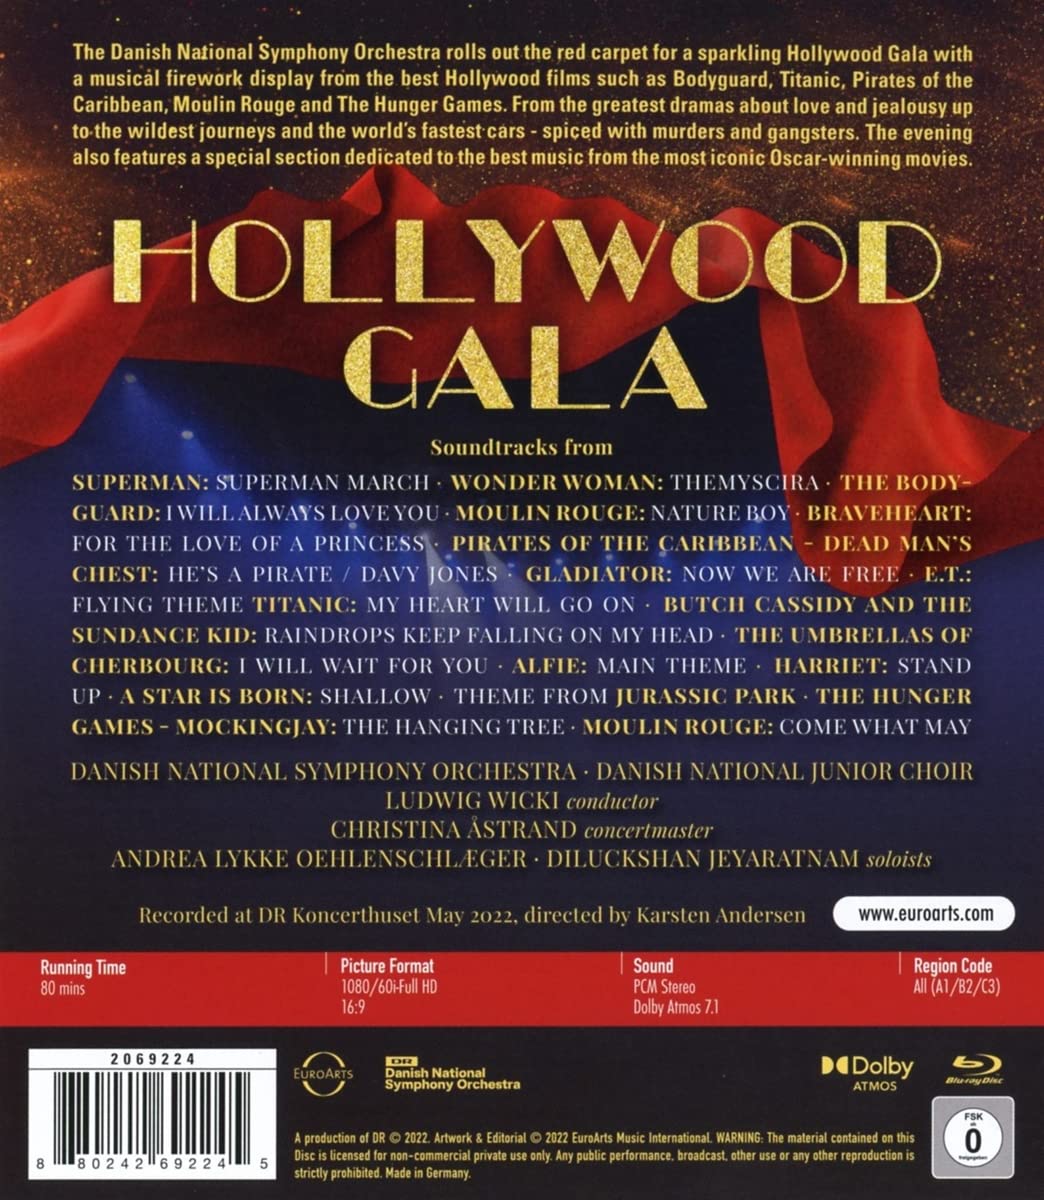 덴마크 국립 오케스트라가 연주하는 영화음악 (Danish National Symphony Orchestra - Hollywood Gala)